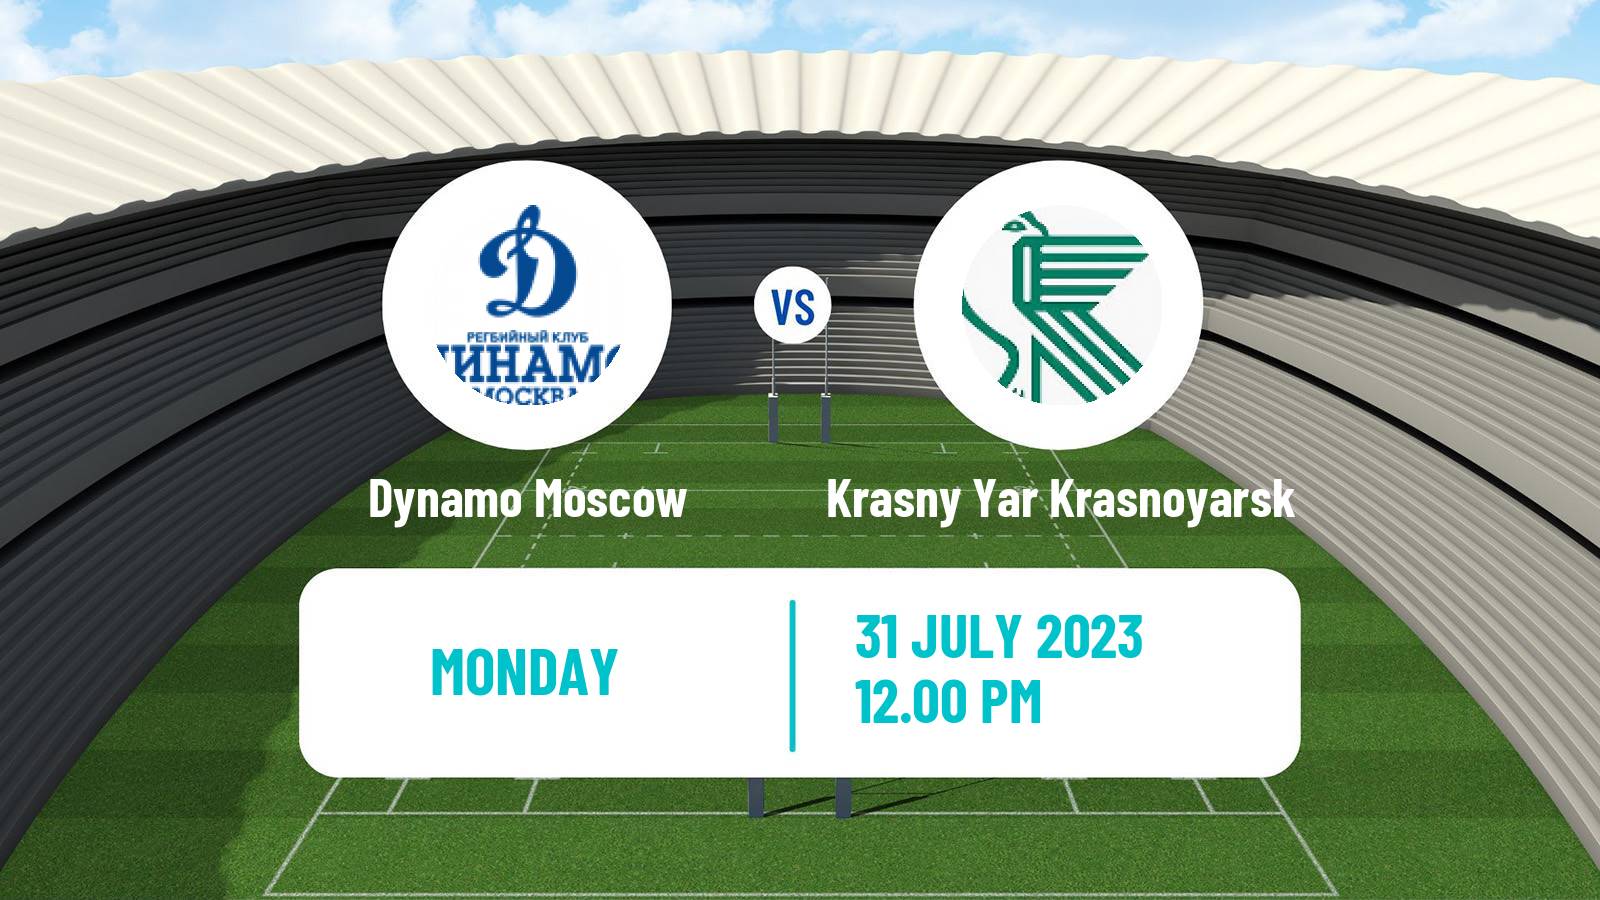 Rugby union Russian Premier League Rugby Dynamo Moscow - Krasny Yar Krasnoyarsk